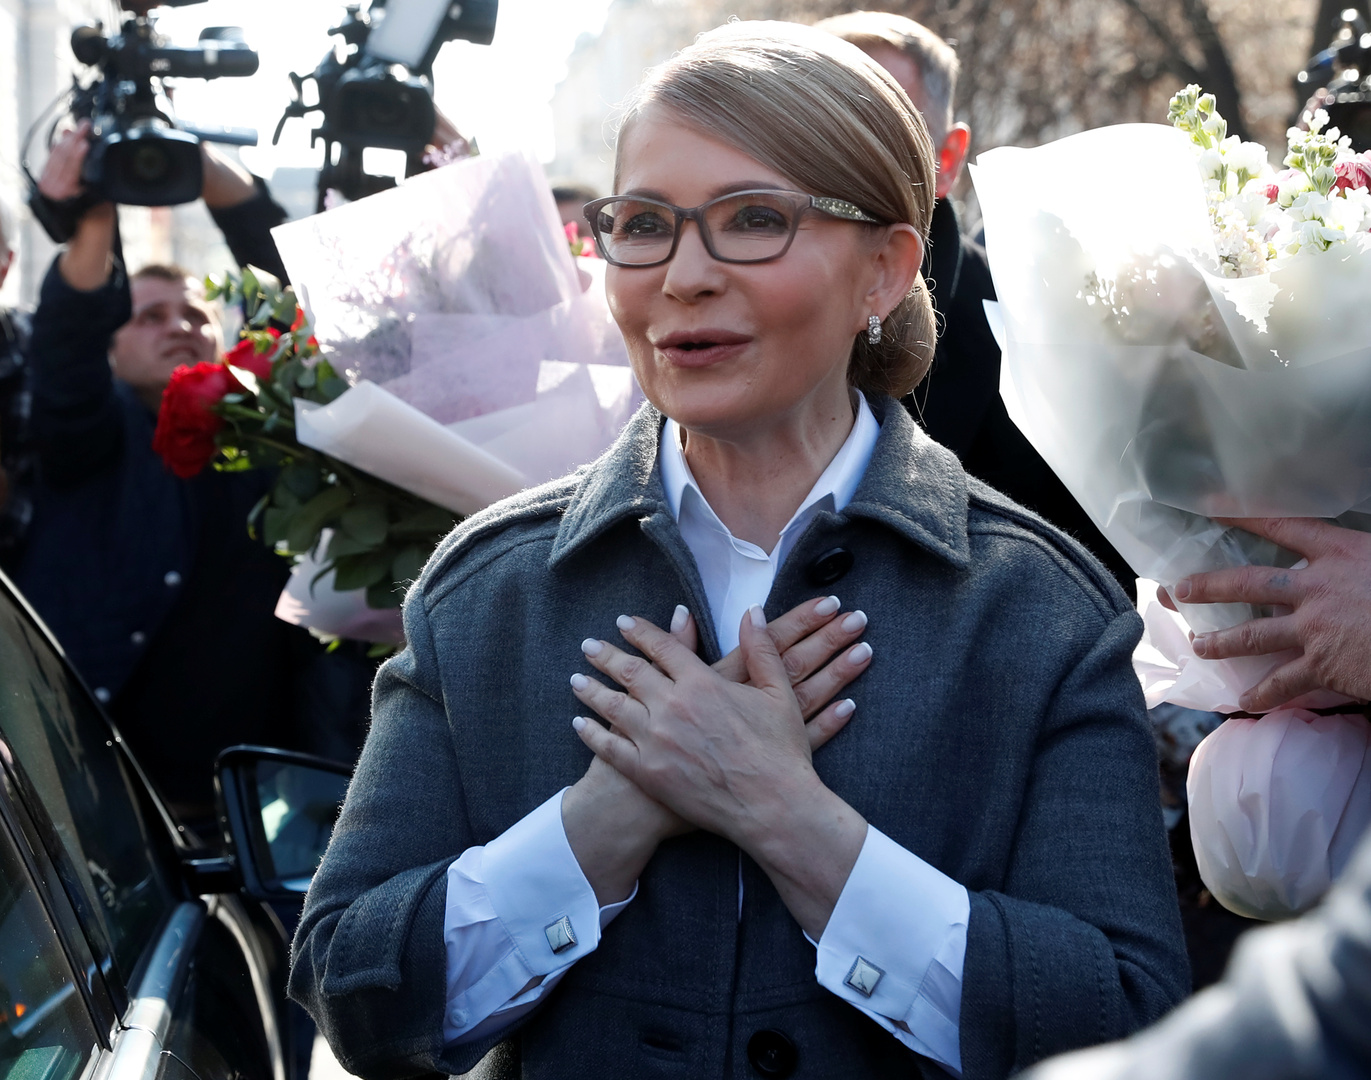 رئيسة وزراء أوكرانيا السابقة أوصلت بجهاز تنفس اصطناعي